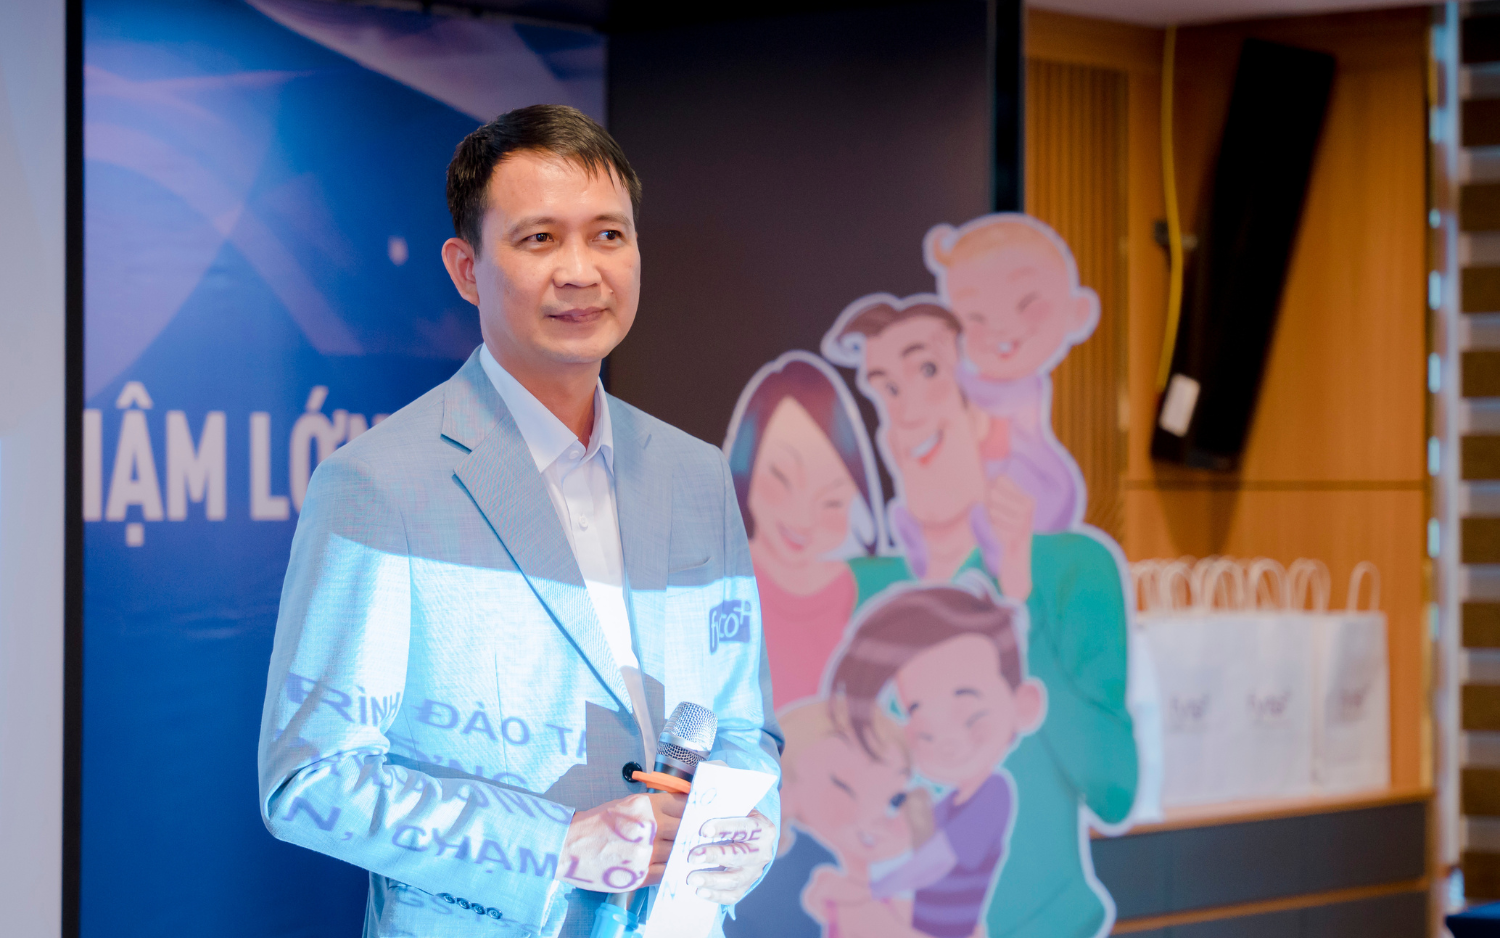 Ông Đào Xuân Quang - Giám đốc điều hành Công ty CP Dược phẩm Keiko phát biểu khai mạc chương trình